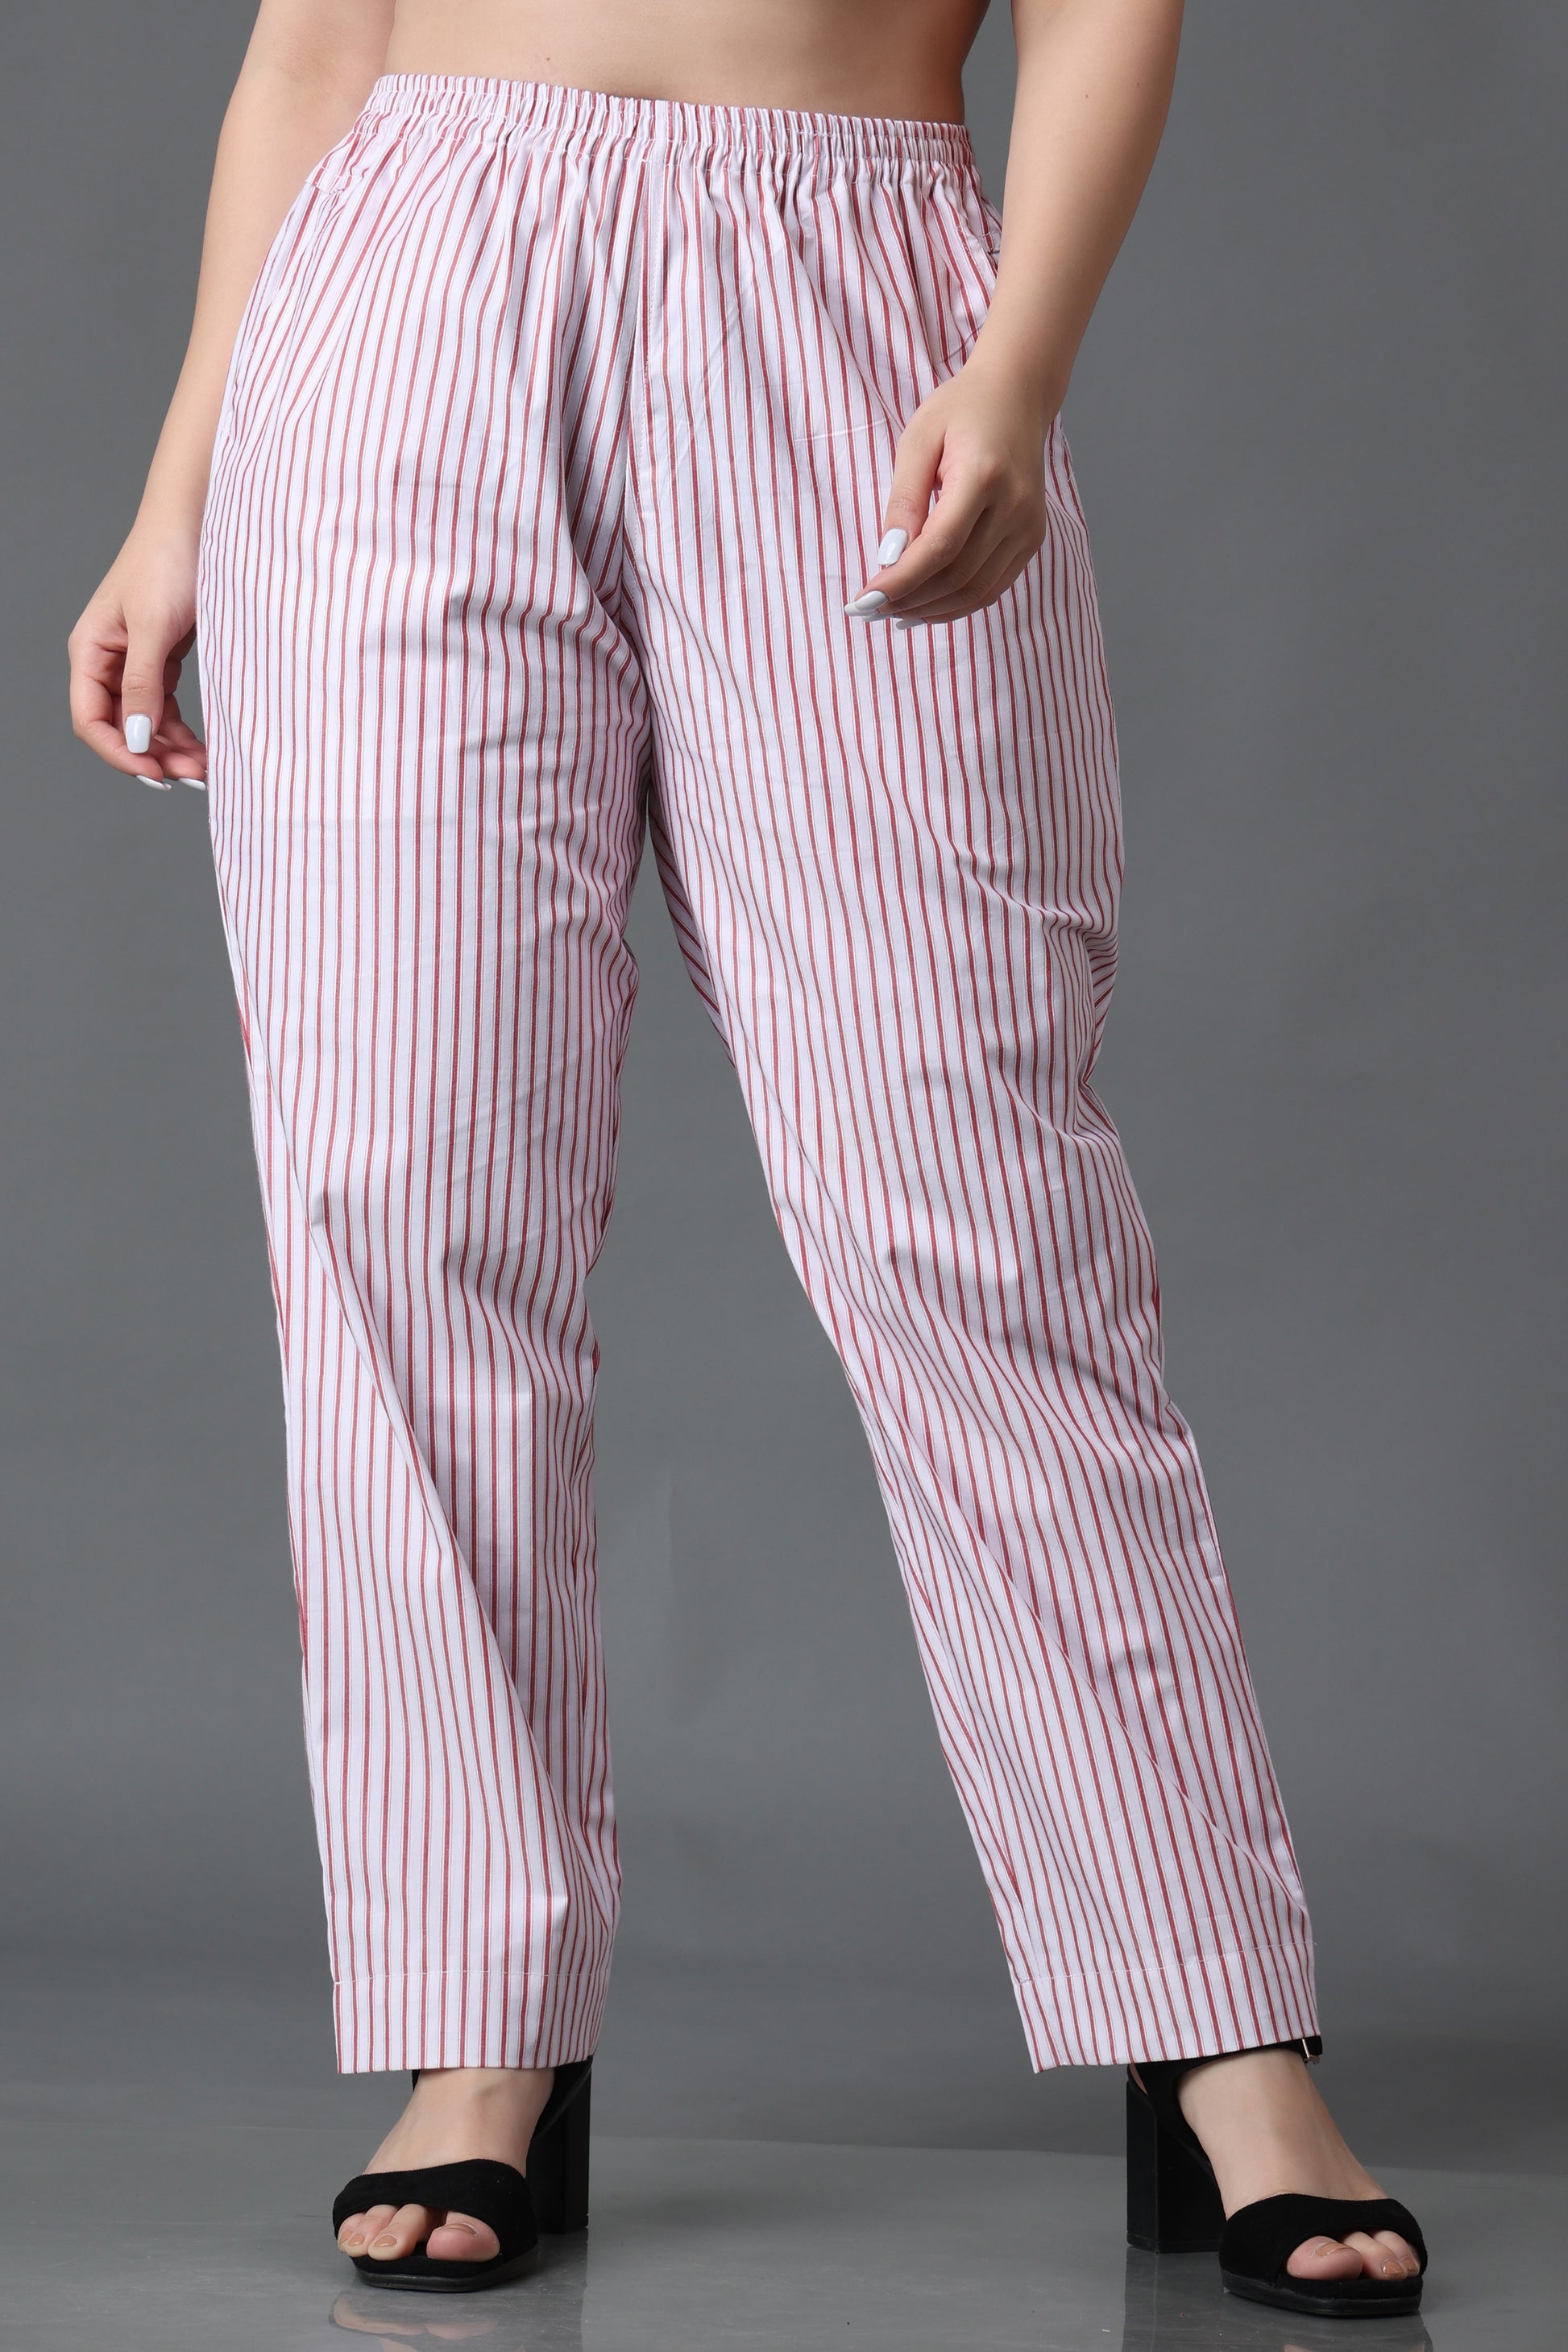 Buy Printed Trousers & Printed Pants For Women - Apella